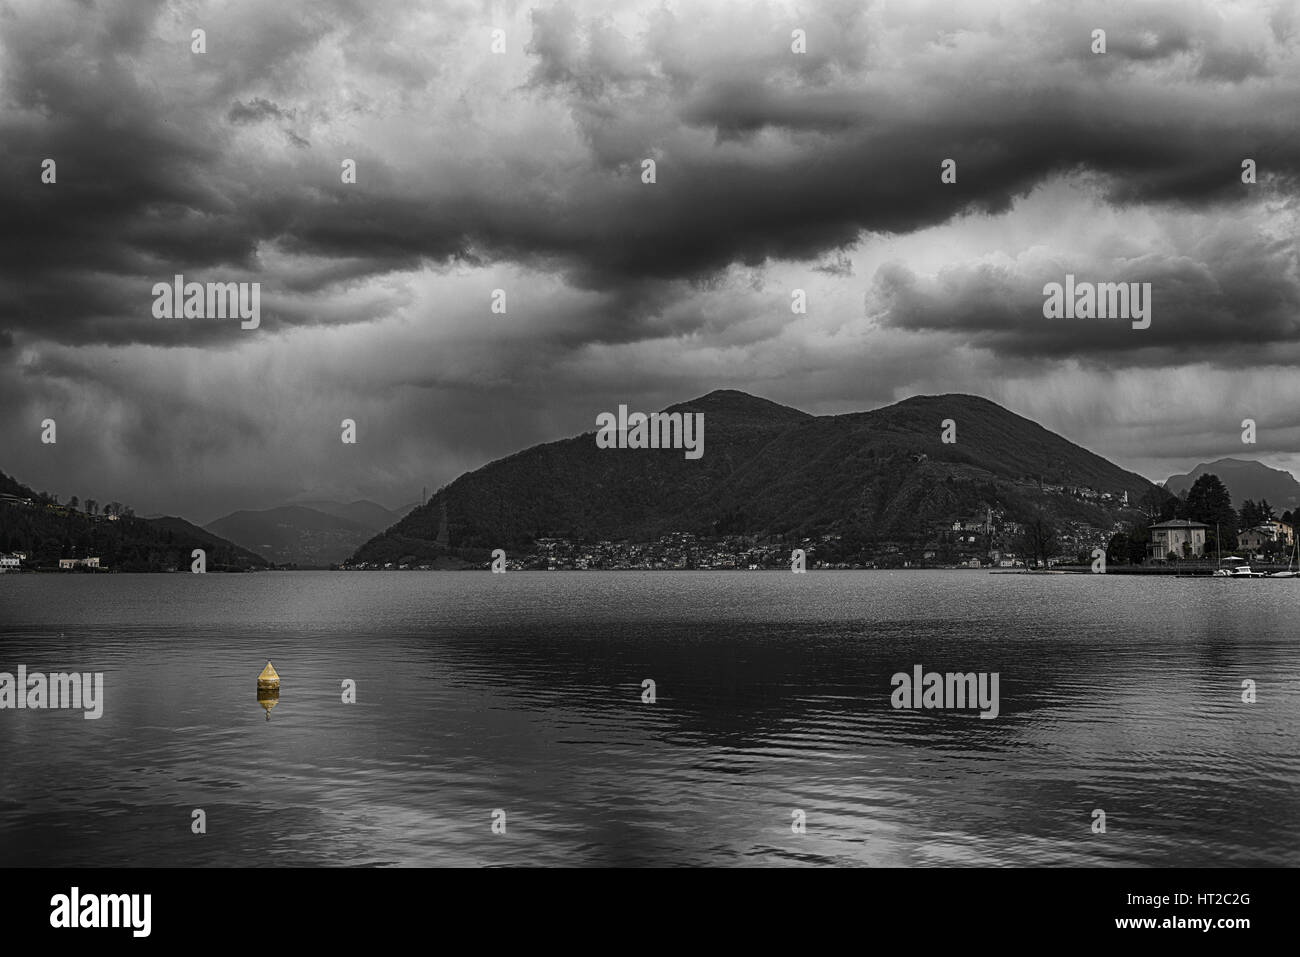 L'après-midi nuageux sur le lac de Lugano avec du jaune bouée flottante, Porto Ceresio - Varèse - Italie Banque D'Images